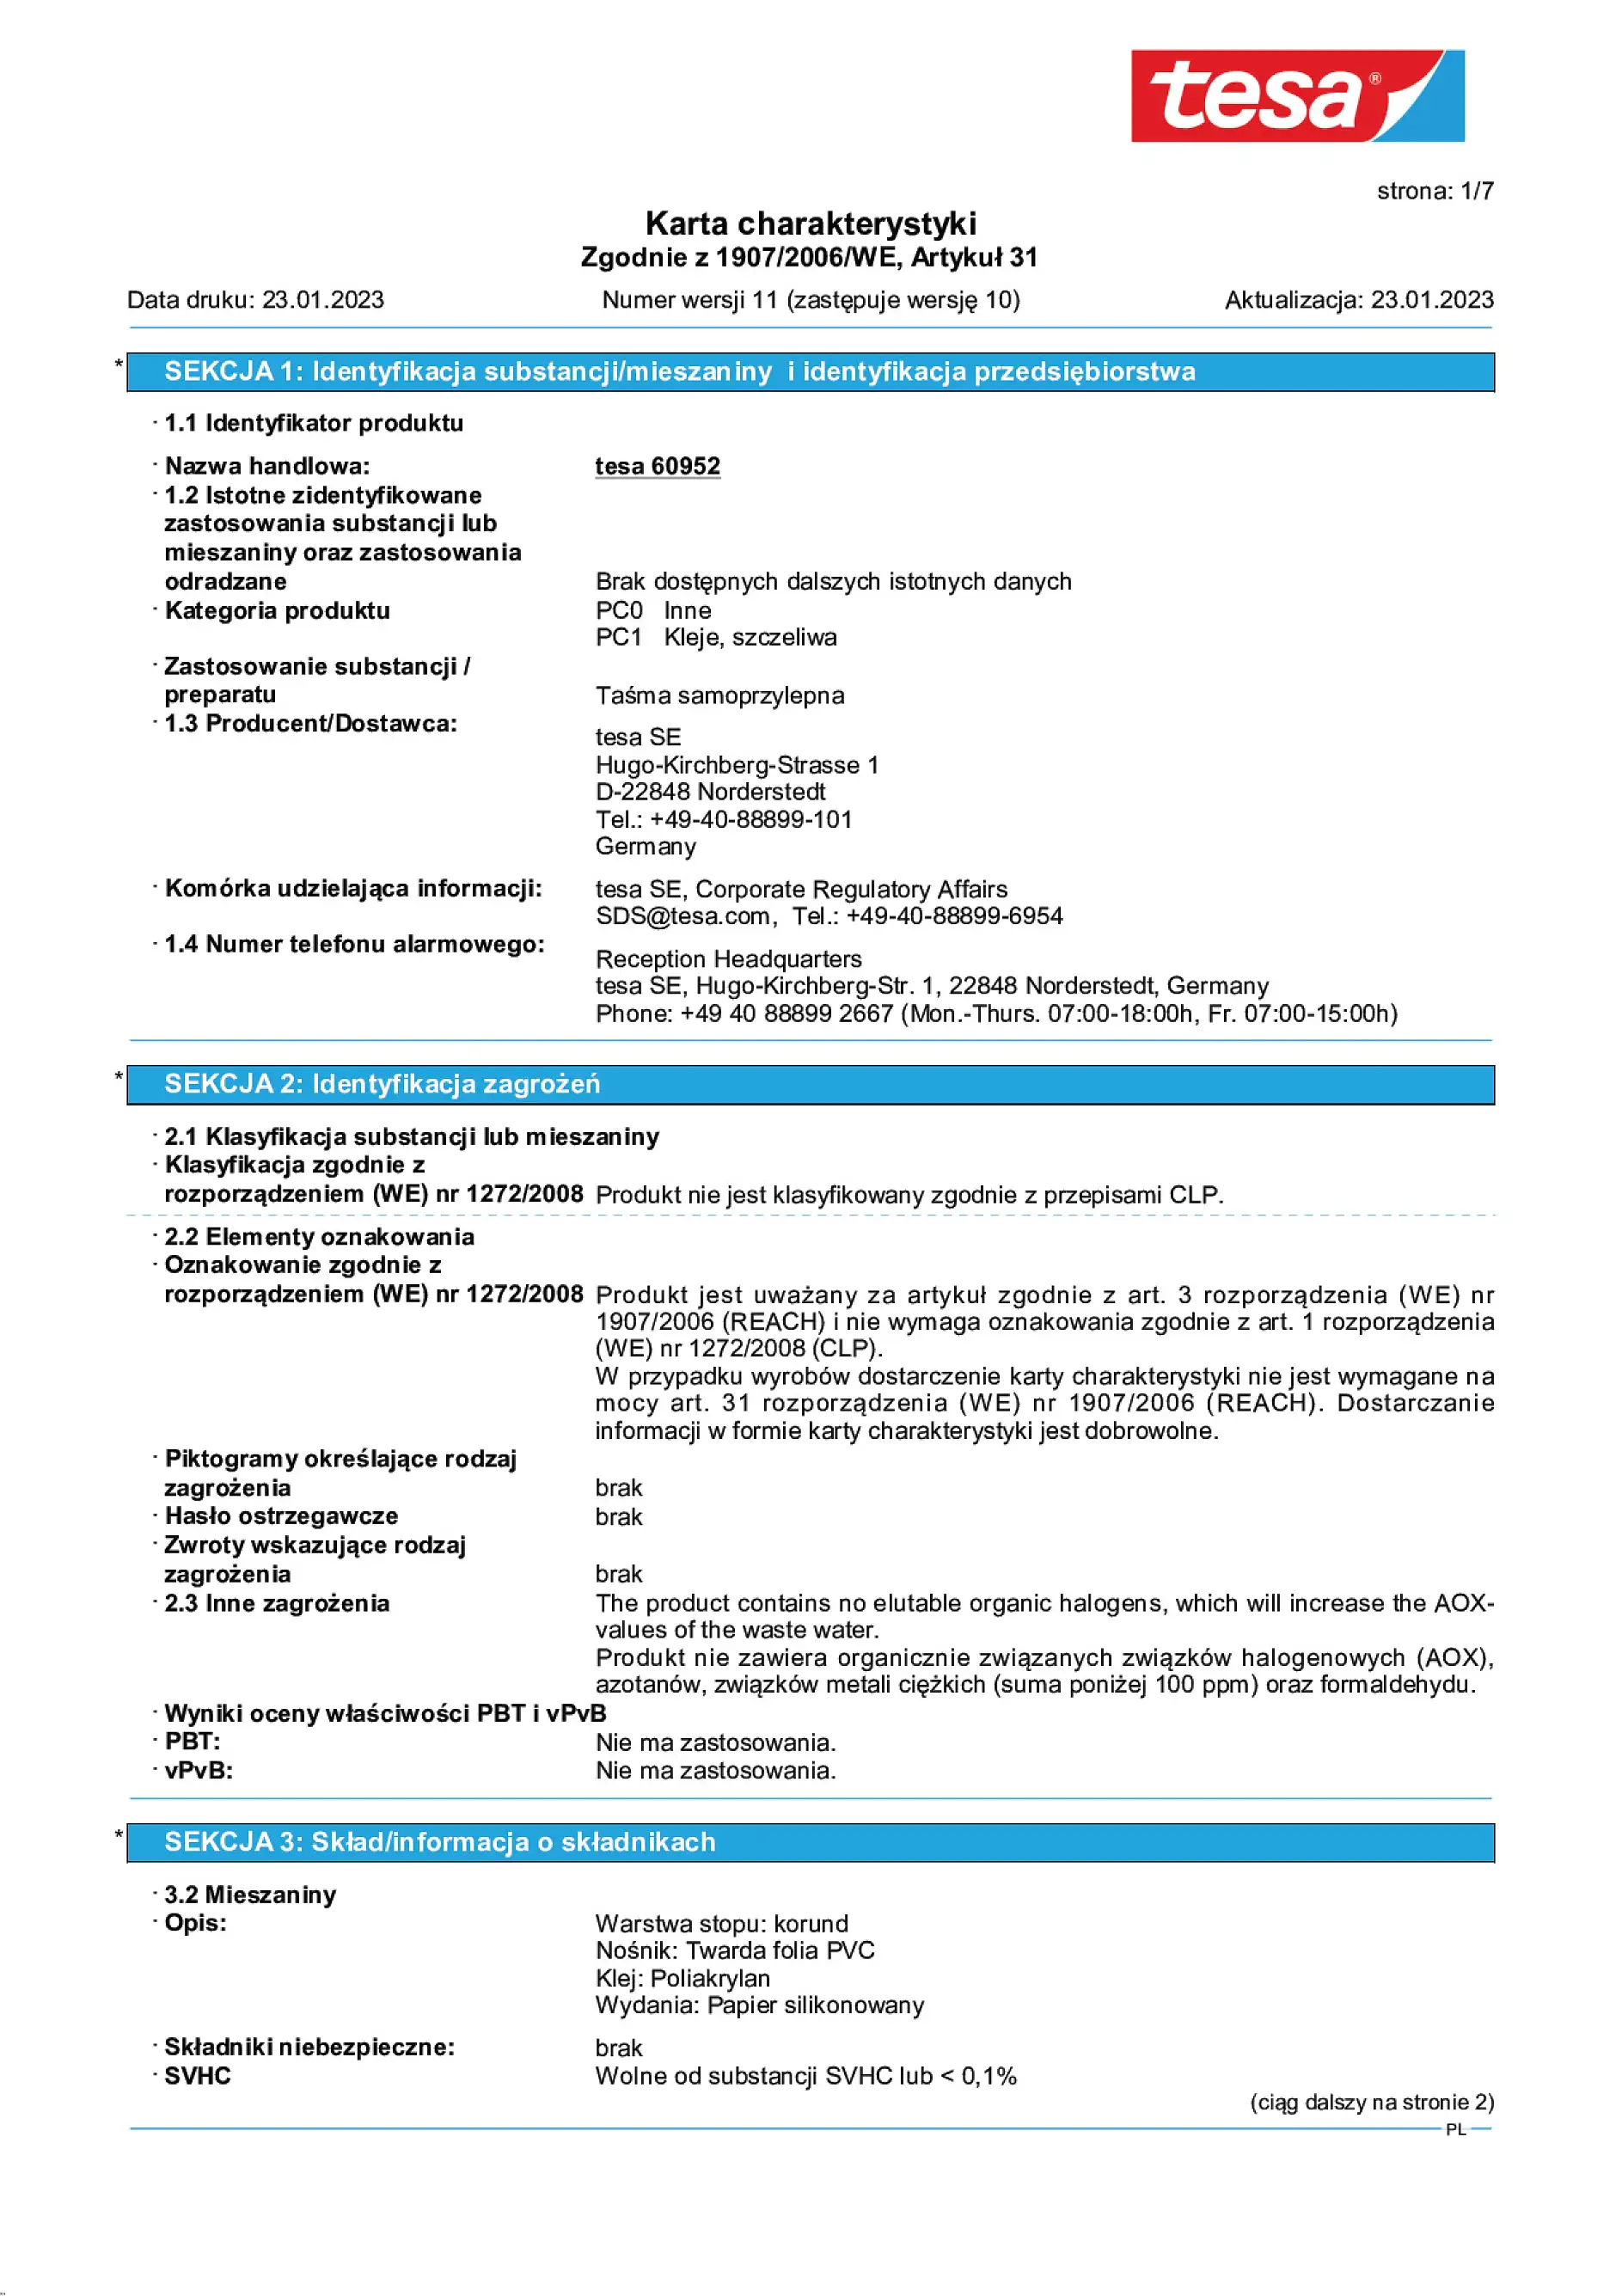 Safety data sheet_tesa® Professional 60950_pl-PL_v11